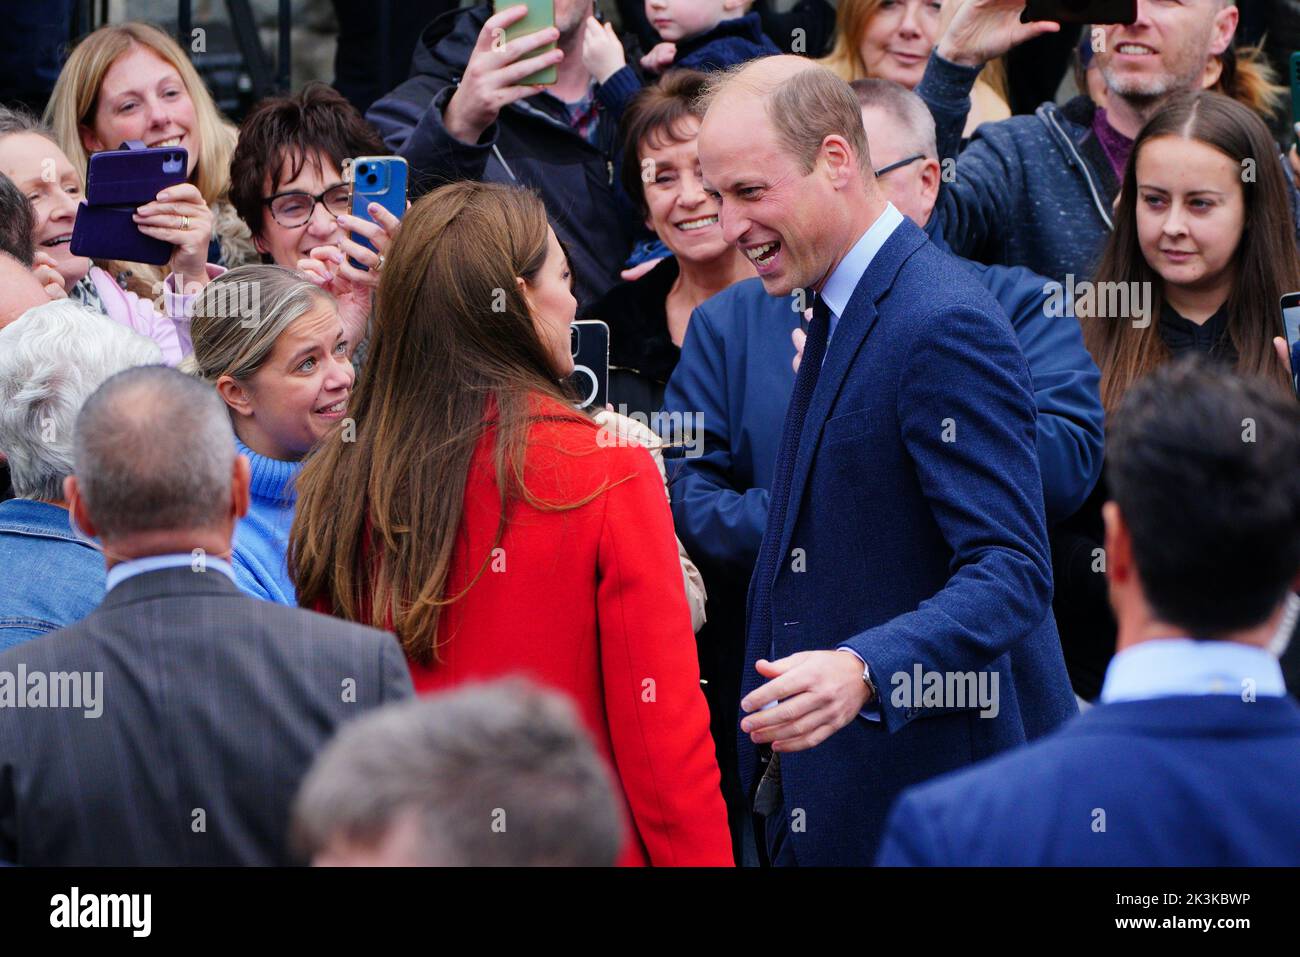 Le prince et la princesse de Galles rencontrent des membres du public lorsqu'ils partent après une visite à l'église Saint-Thomas, à Swansea, au pays de Galles. Date de la photo: Mardi 27 septembre 2022. Banque D'Images